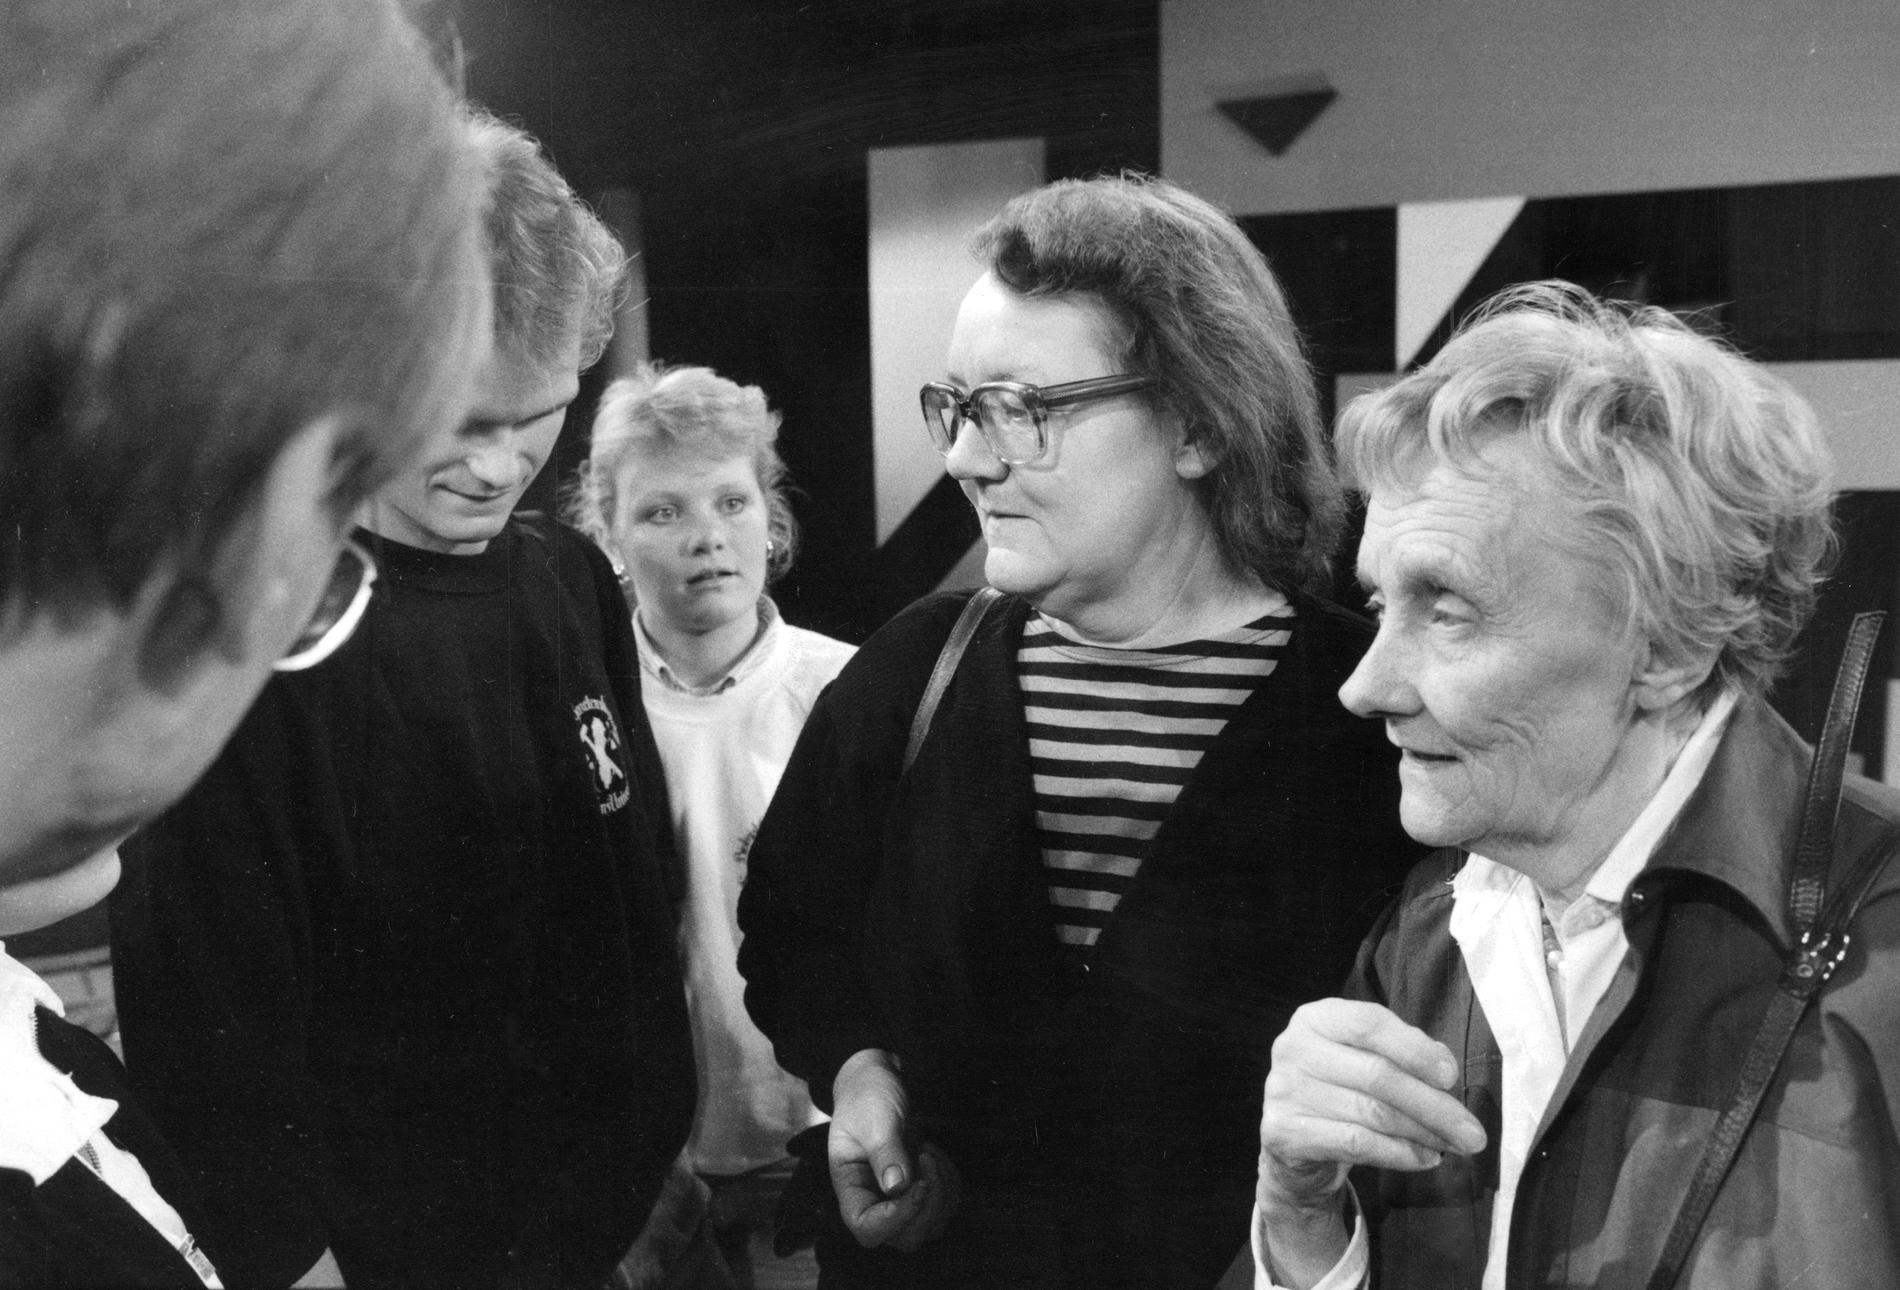 I TV-programmet "Ärligt talat" uppmanade Marit Paulsen och Astrid Lindgren 1985 till ”revolt mot den dåliga maten” .